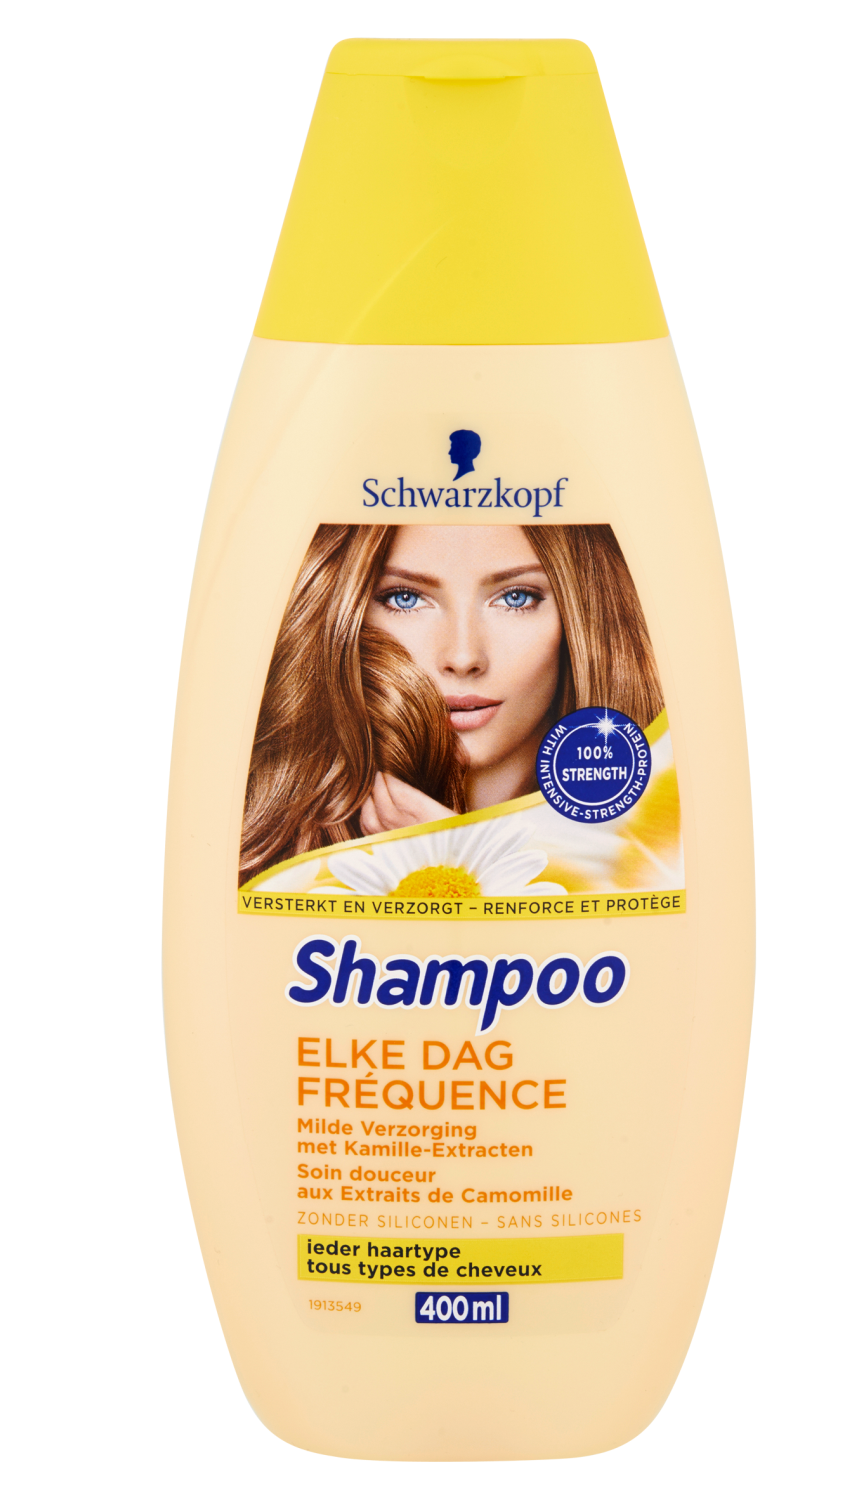 Schwarzkopf Shampoo Elke Dag